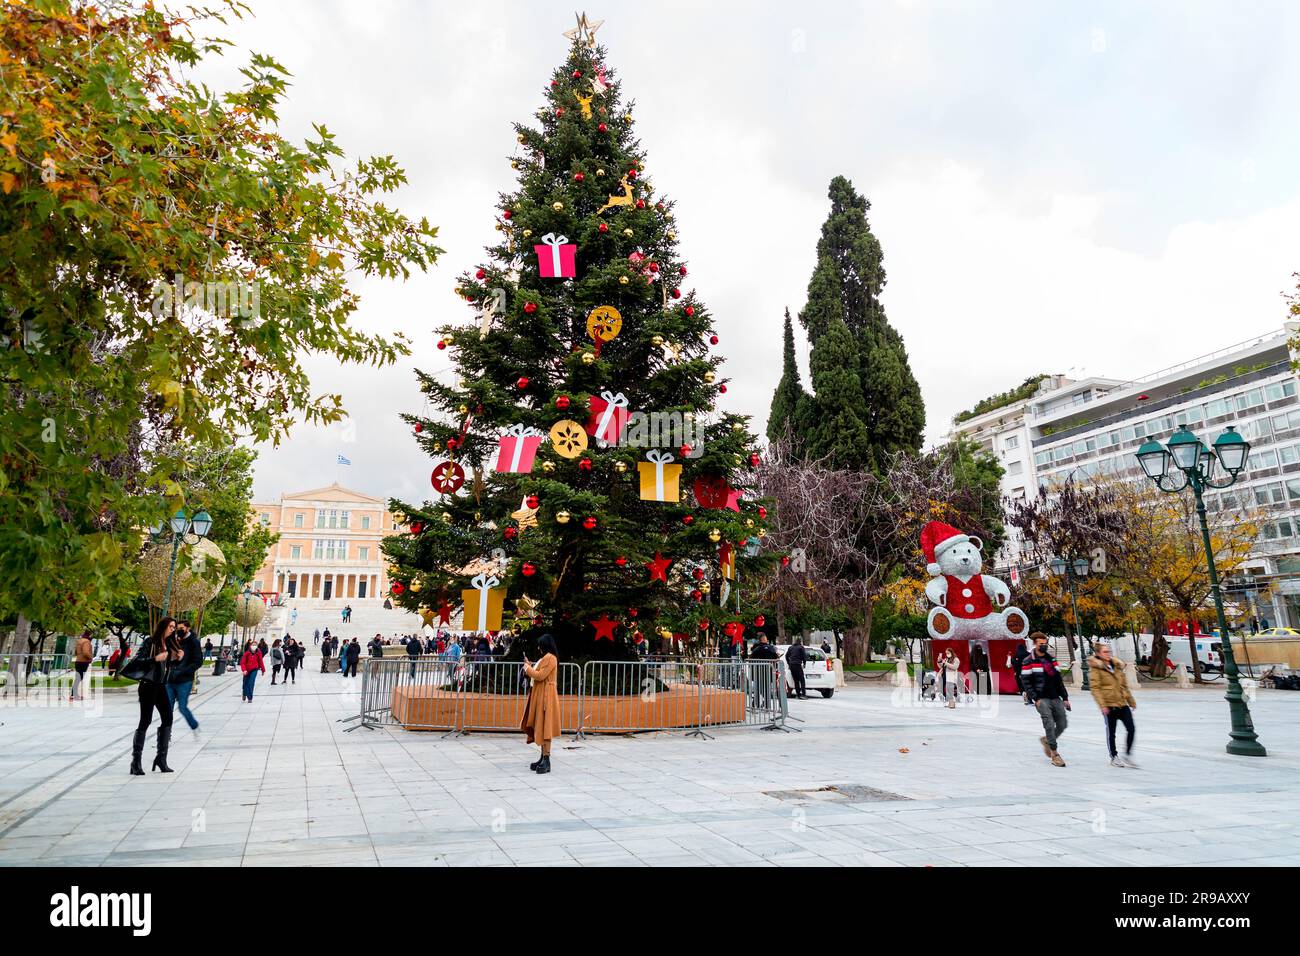 Athènes, Grèce - 24 novembre 2021 : décorations de Noël sur la place Syntagma, au centre d'Athènes, capitale grecque. Banque D'Images